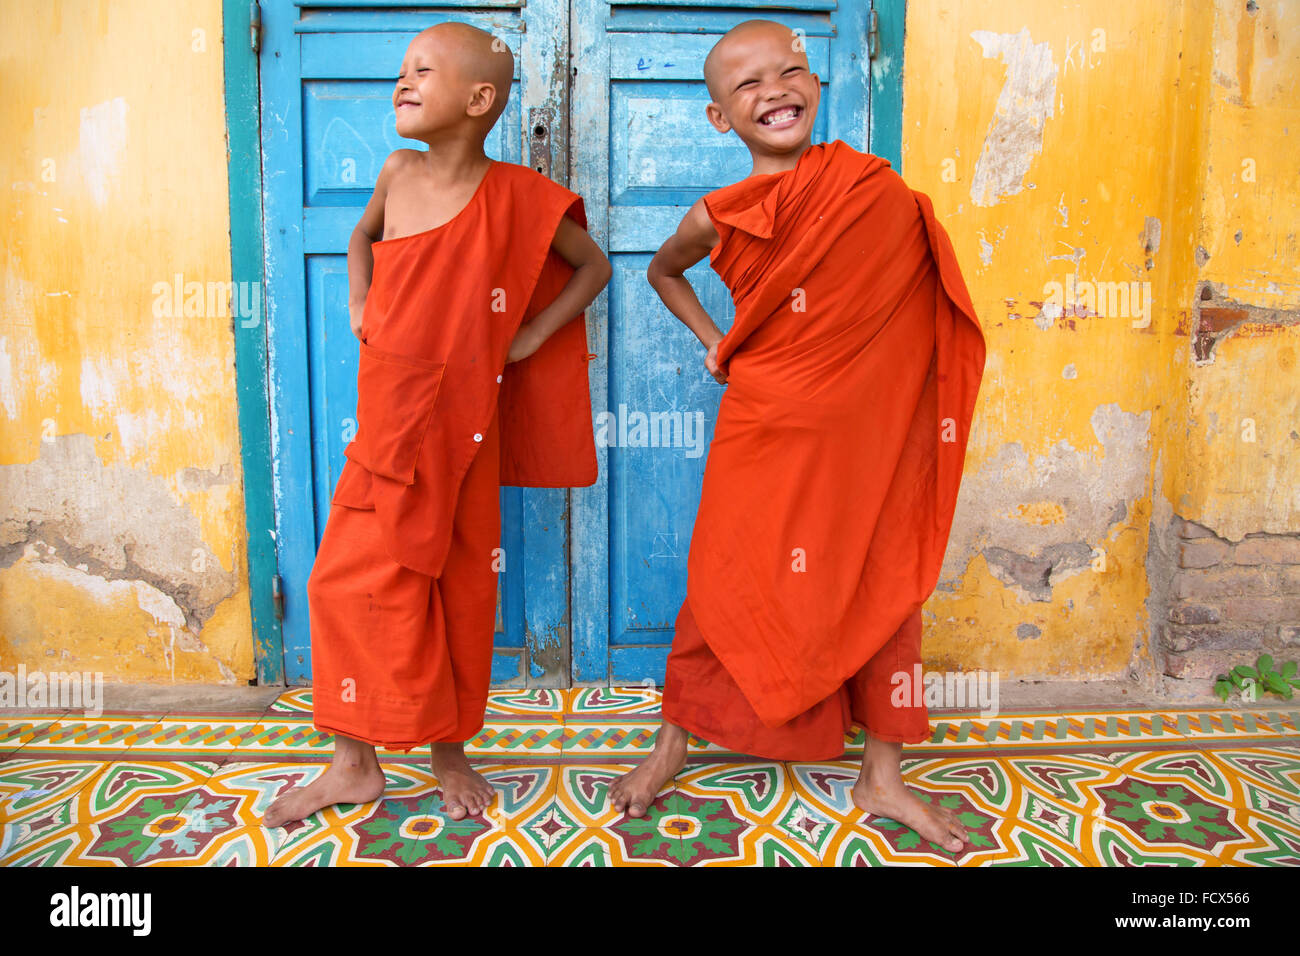 Buddhist monks having fun at the monastery in Battambang, Cambodia Stock Photo